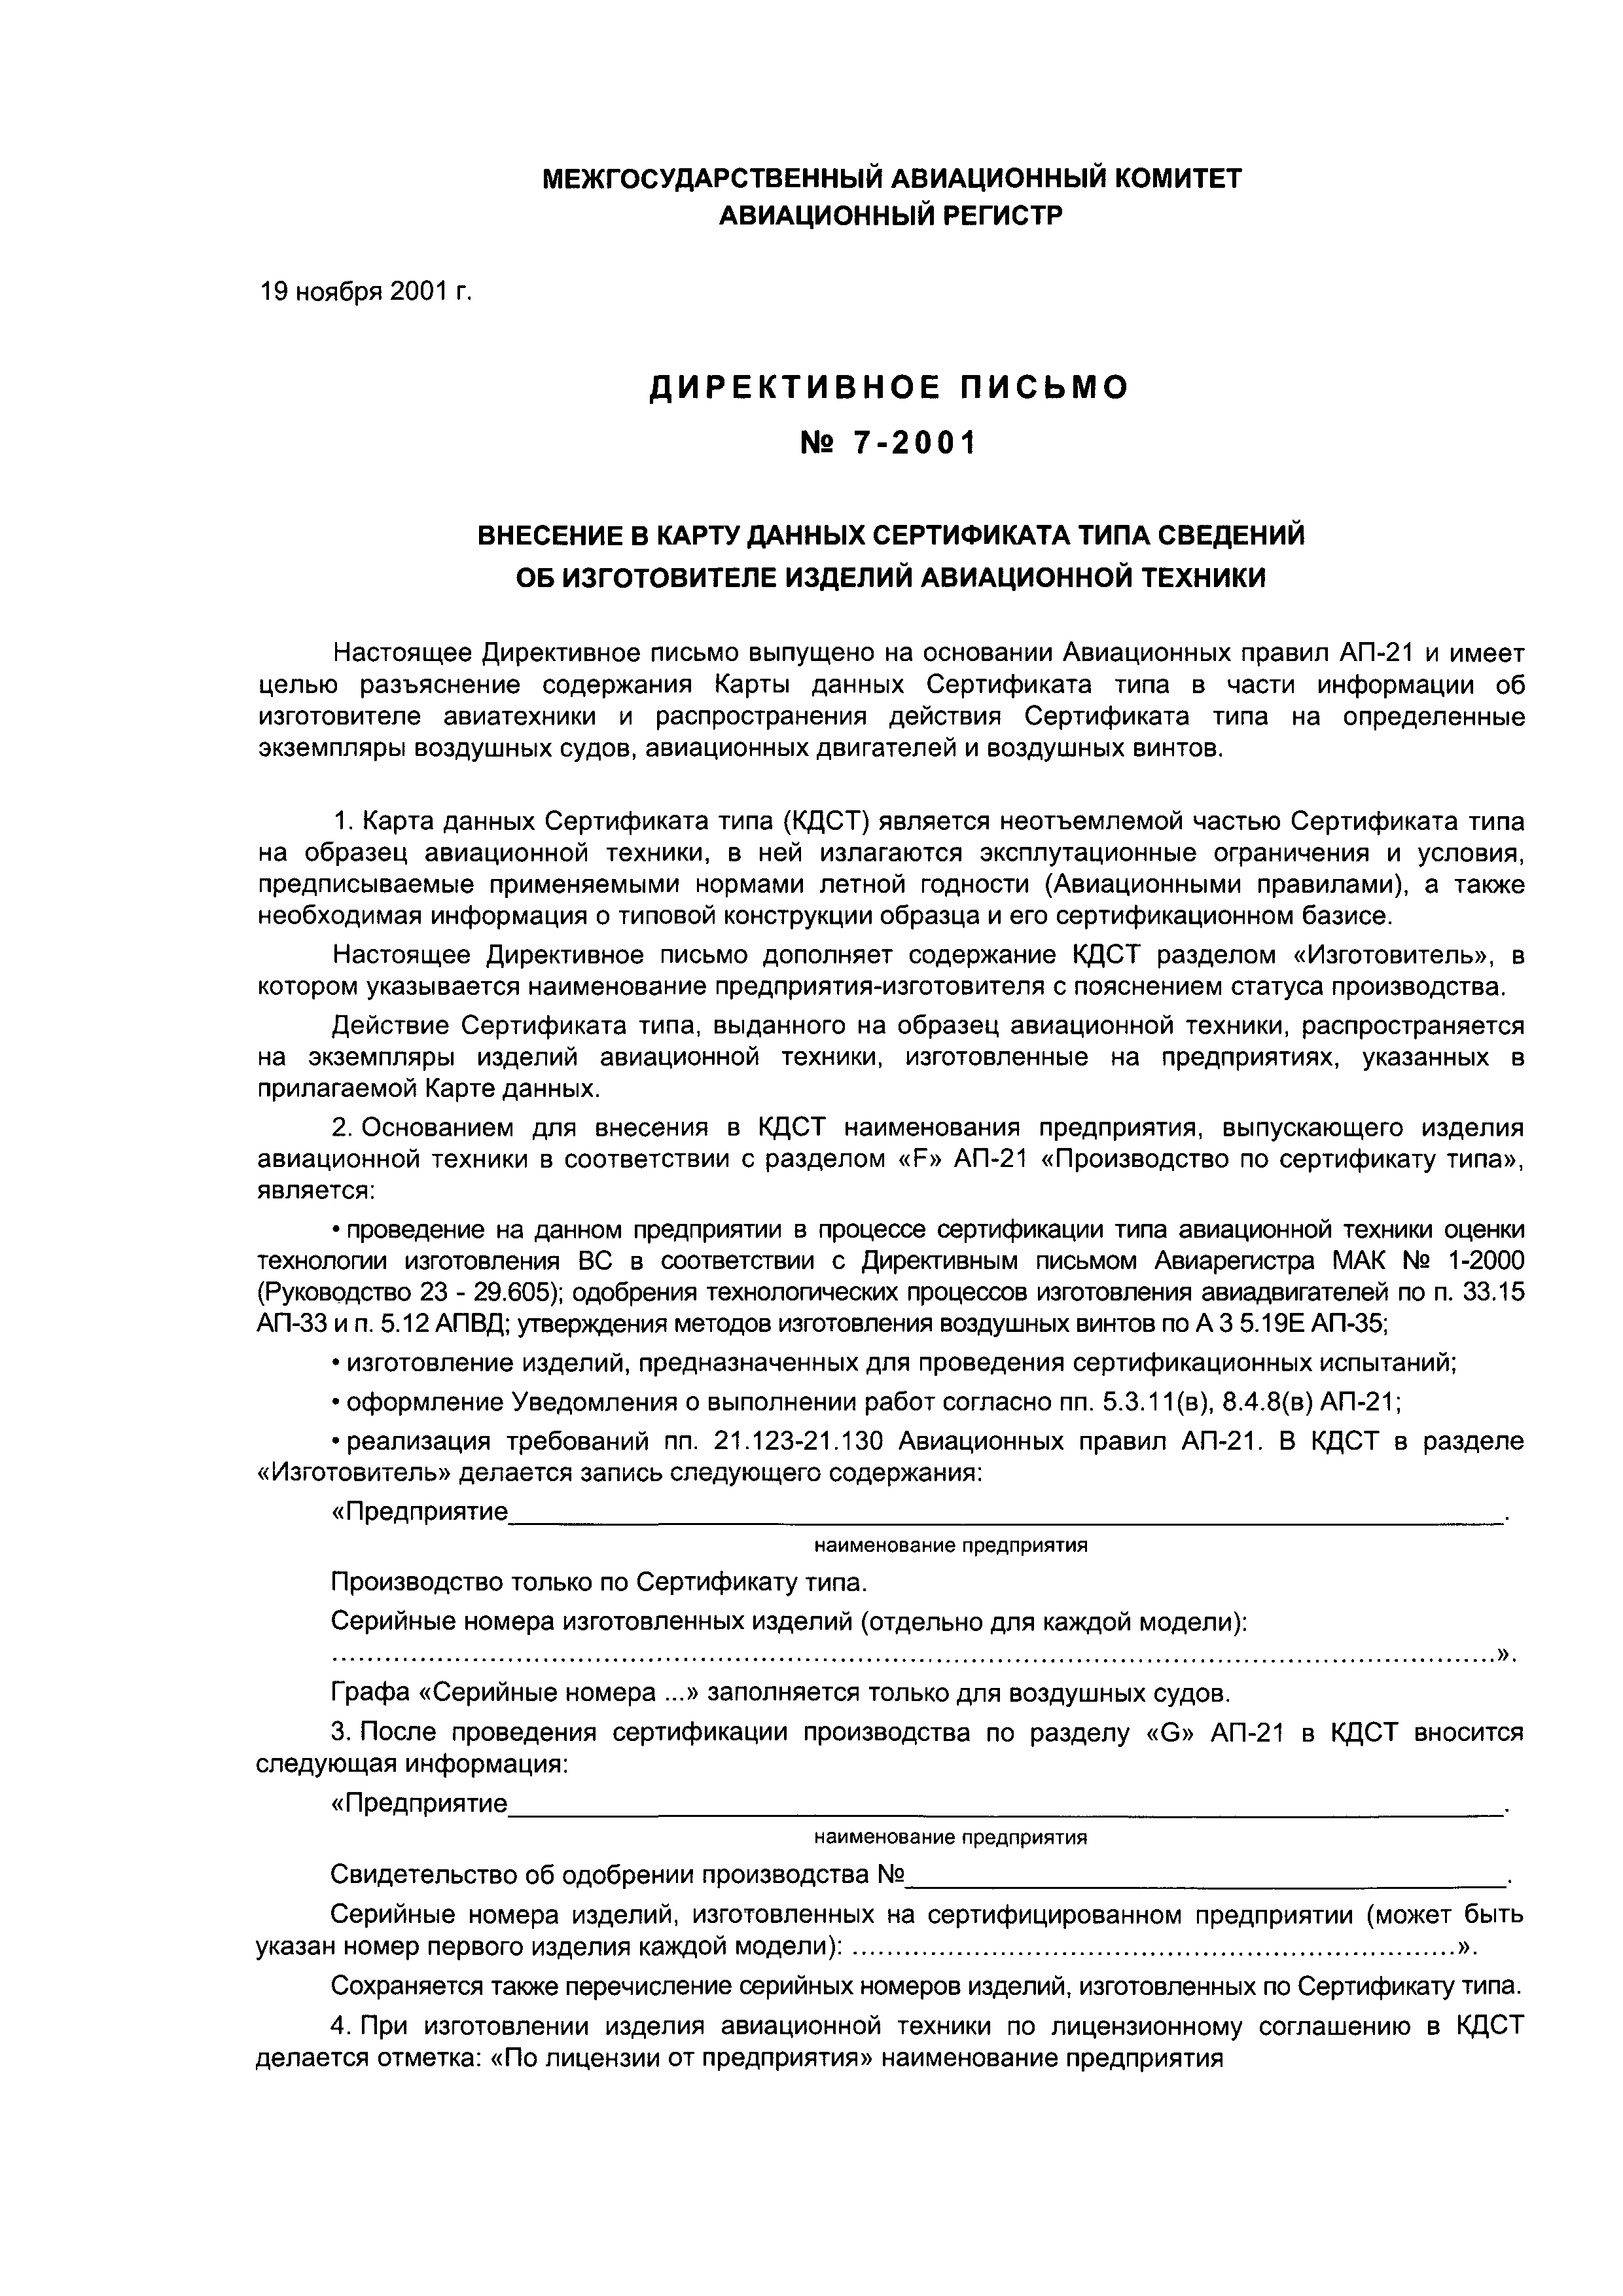 Директивное письмо 7-2001